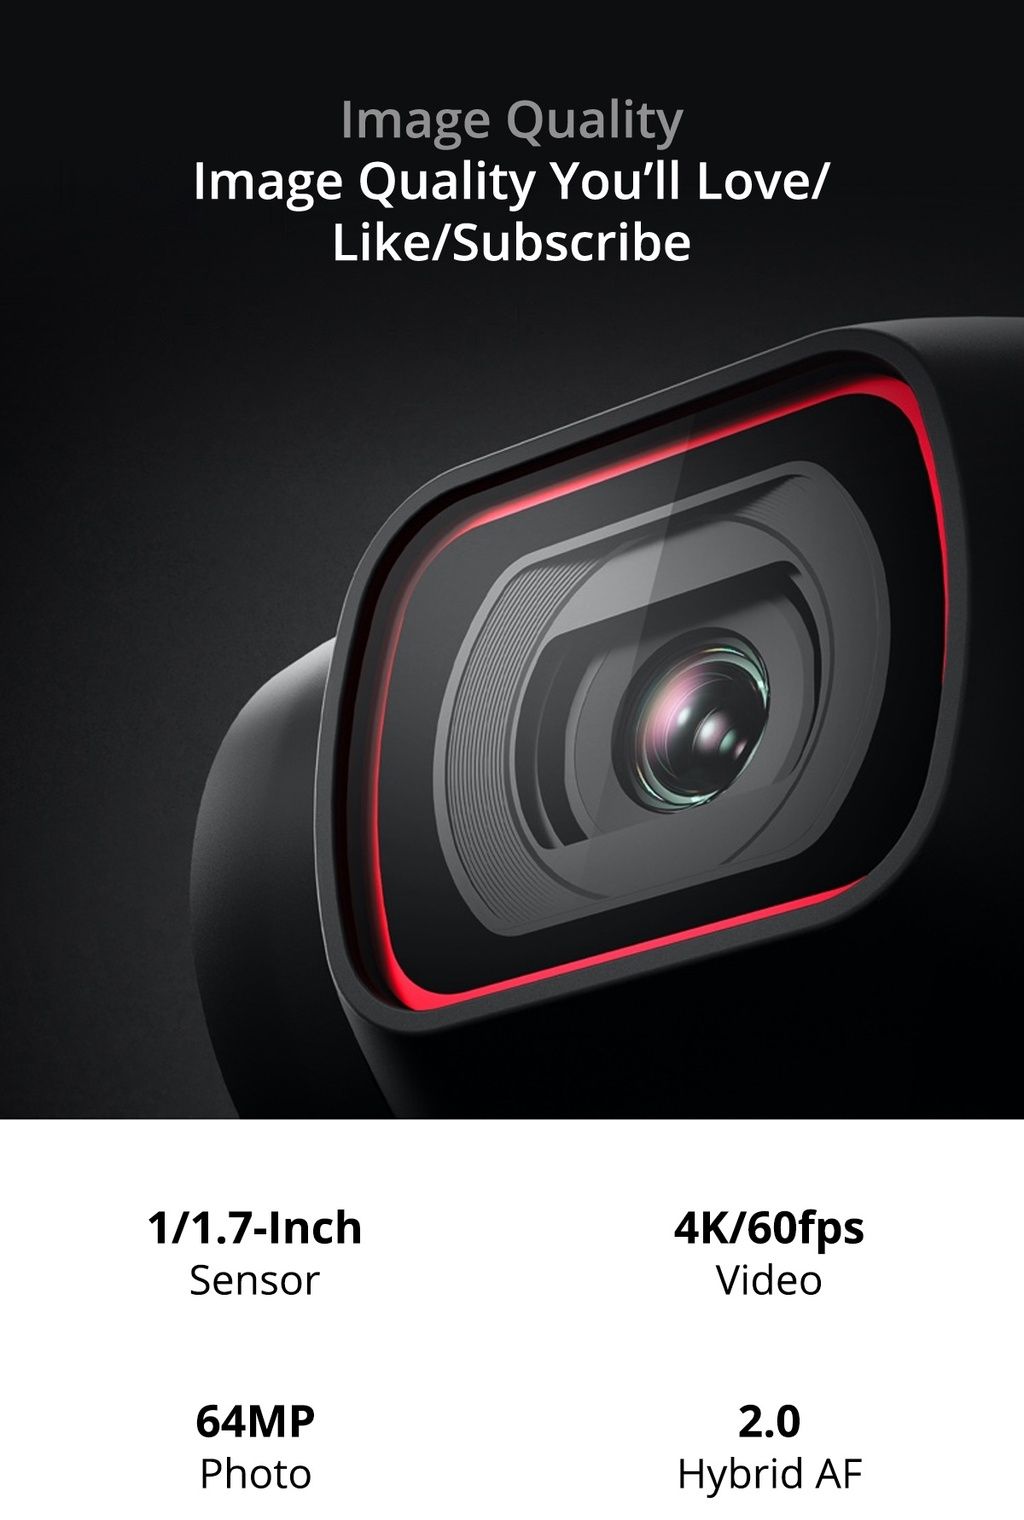 รายละเอียดเพิ่มเติมเกี่ยวกับ DJI POCKET 2 COMBO ดีเจไอ กล้องพกพาถ่ายภาพนิ่งชัด 64MP และวิดีโอระดับ 4K/60fps + SanDisk Extreme 64 GB